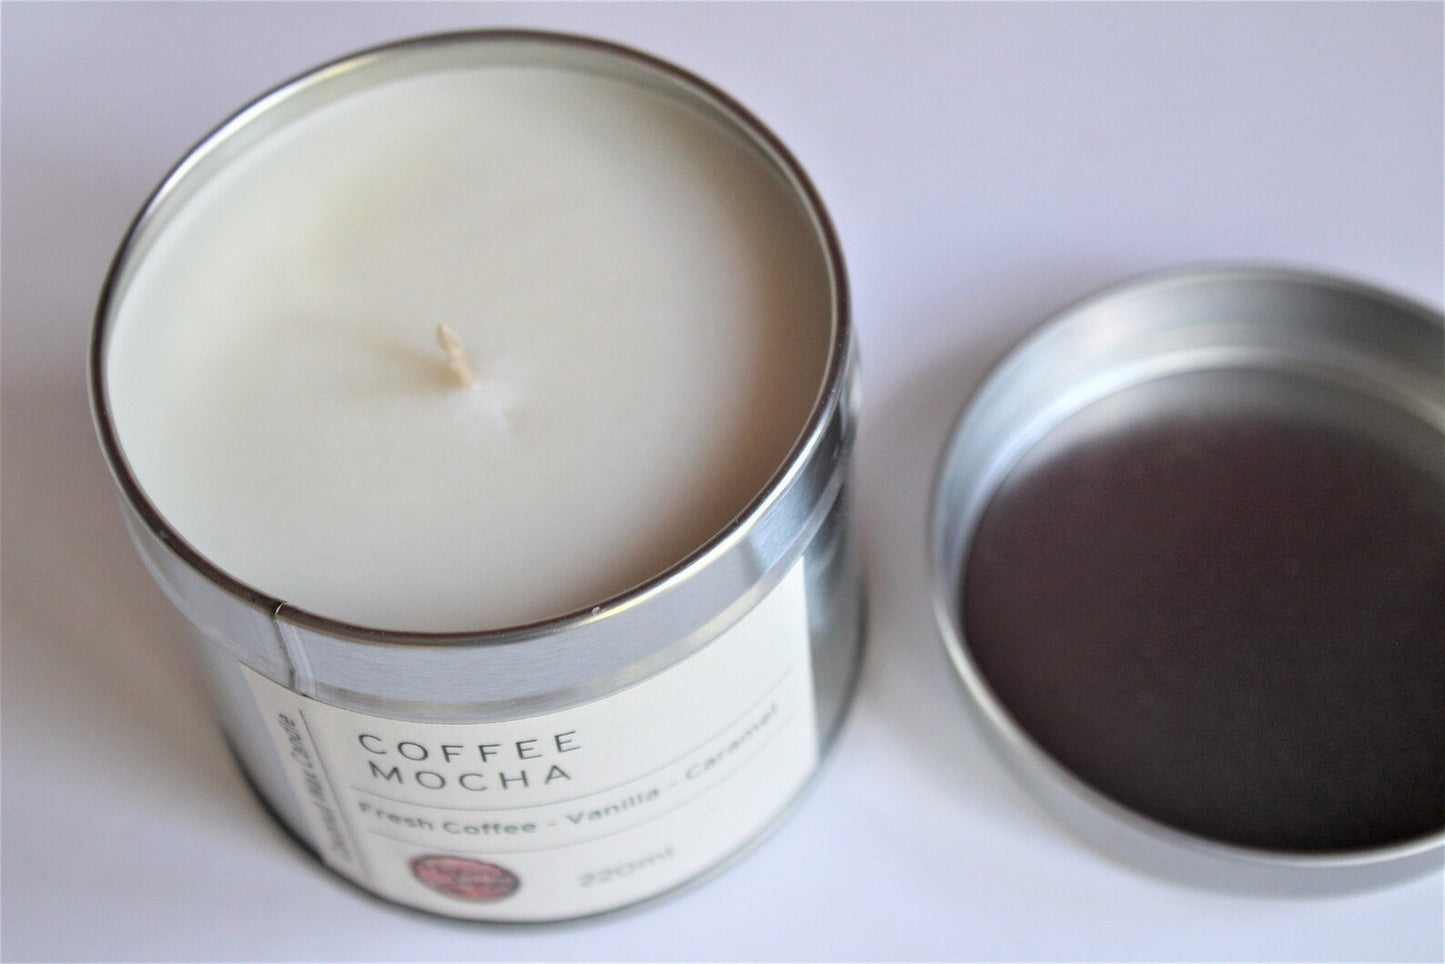 Coffee Mocha Coconut Wax 220g Candle